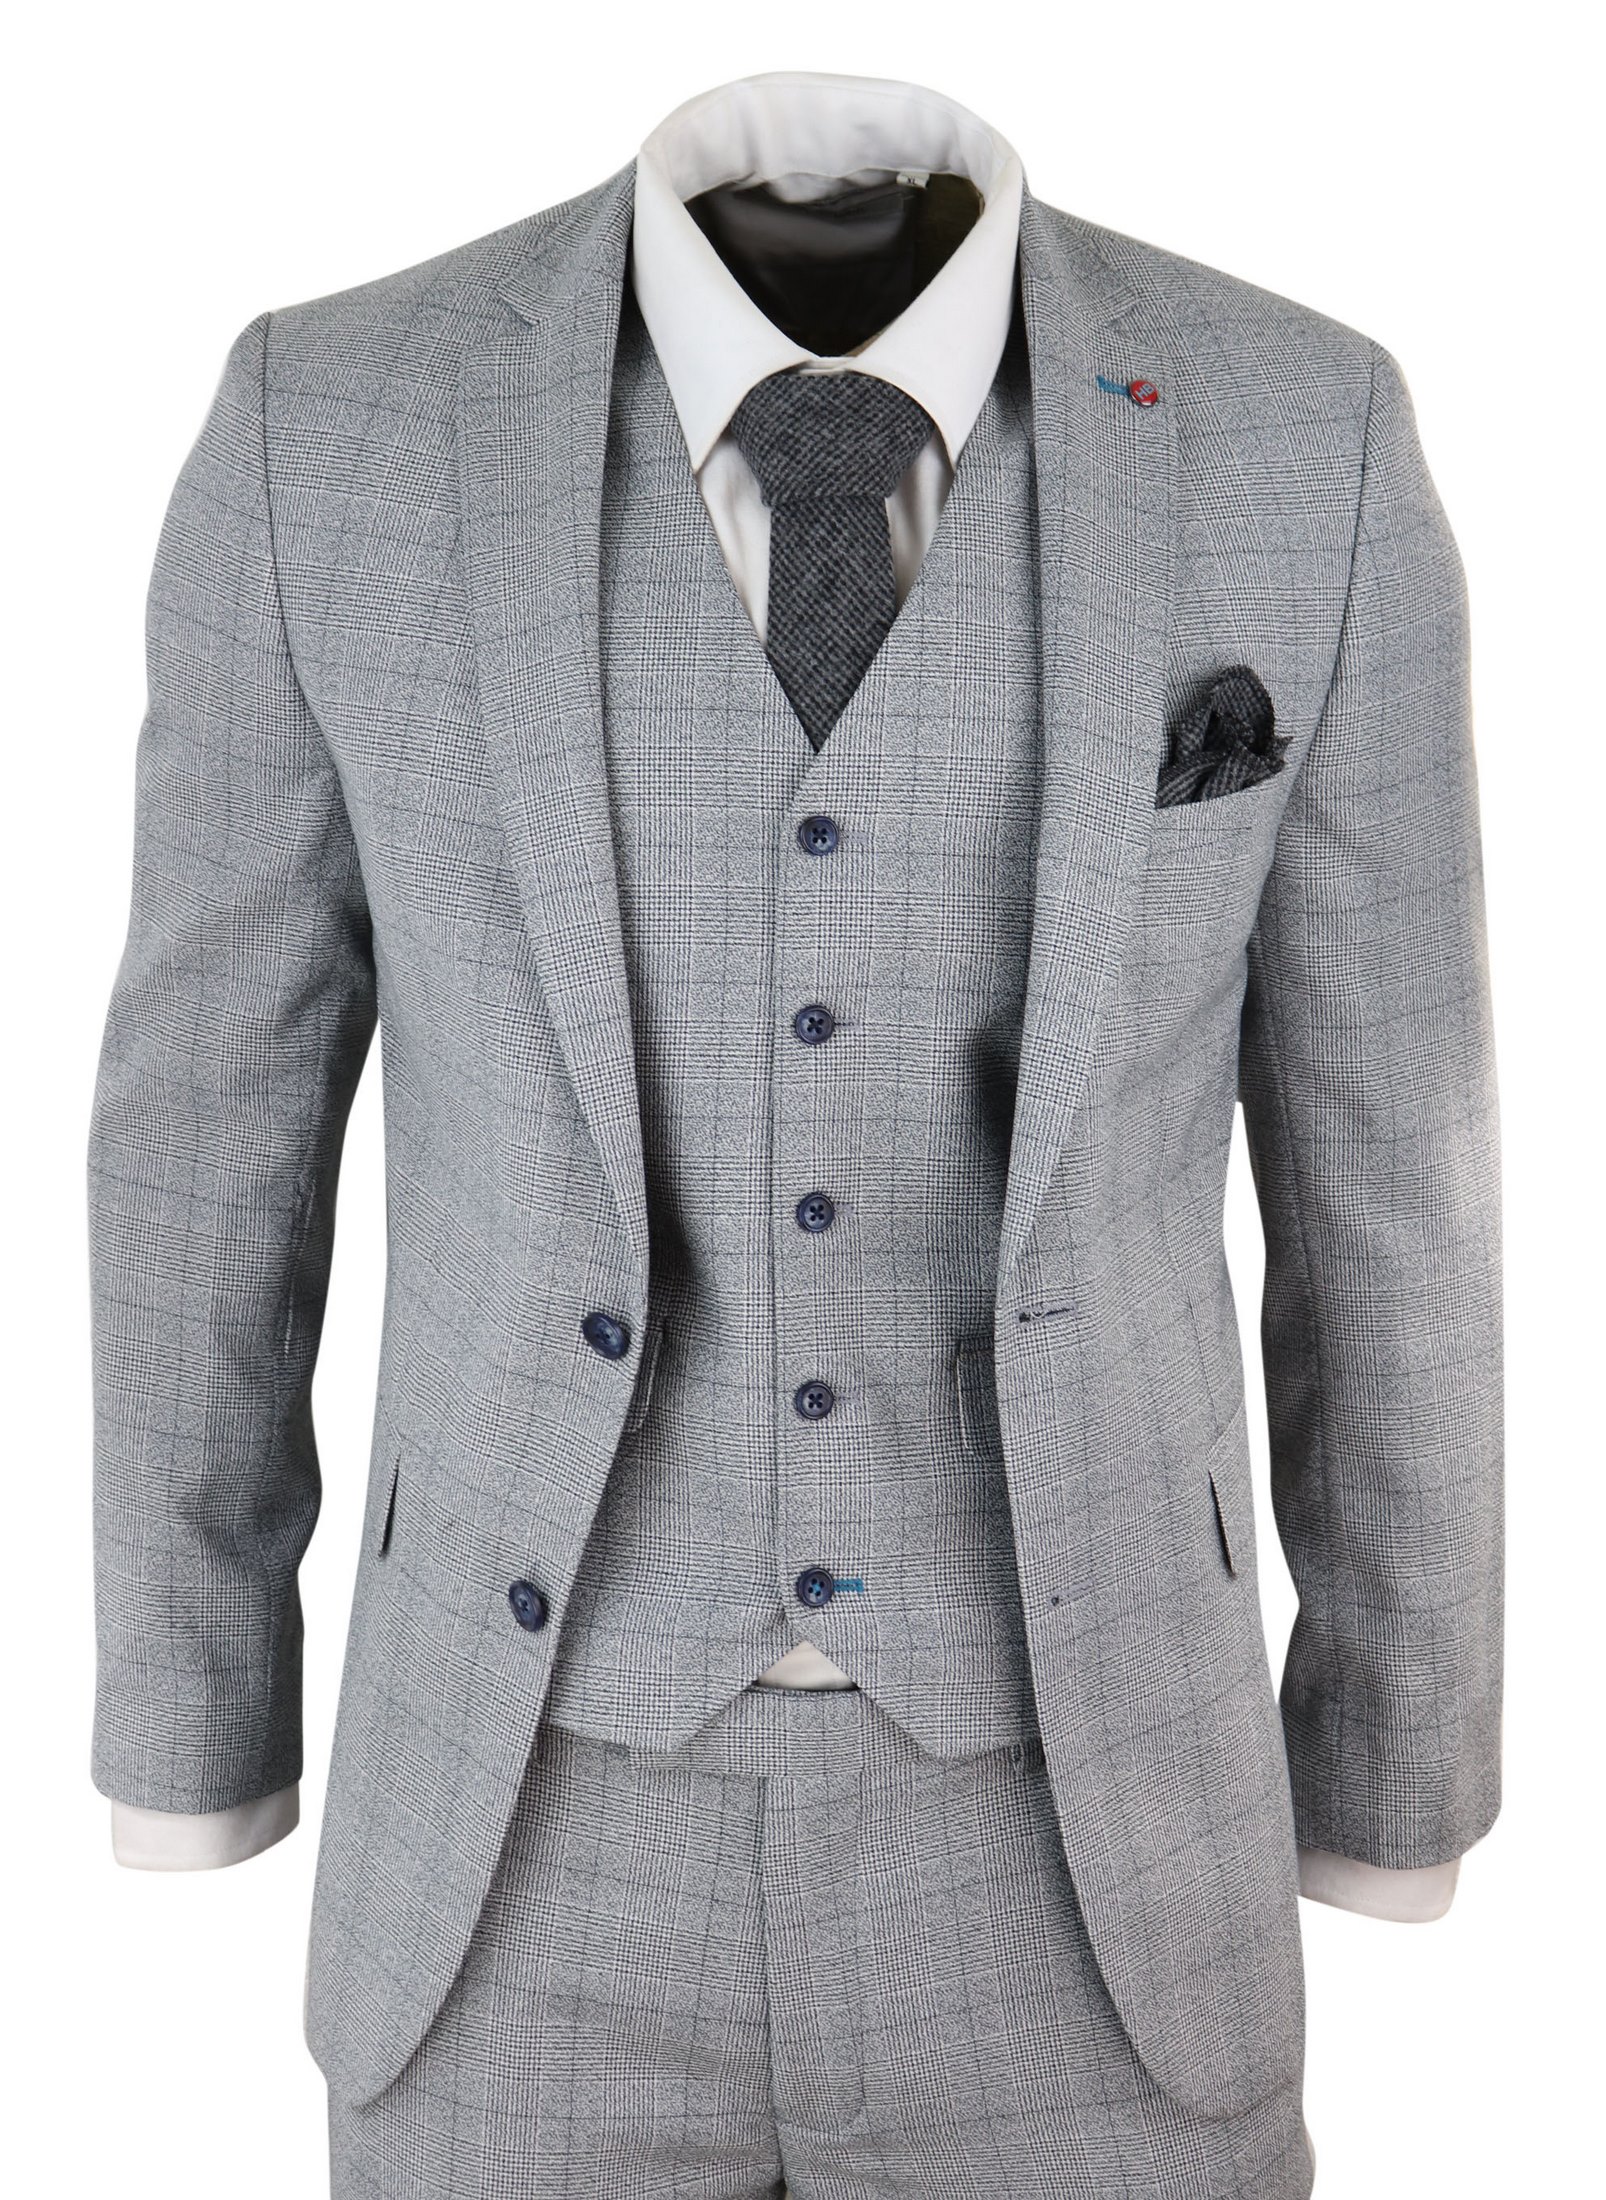 Men's Slim Fit Full Suits : Slim Fit French Blue Suit - 3 Men Suits for ...